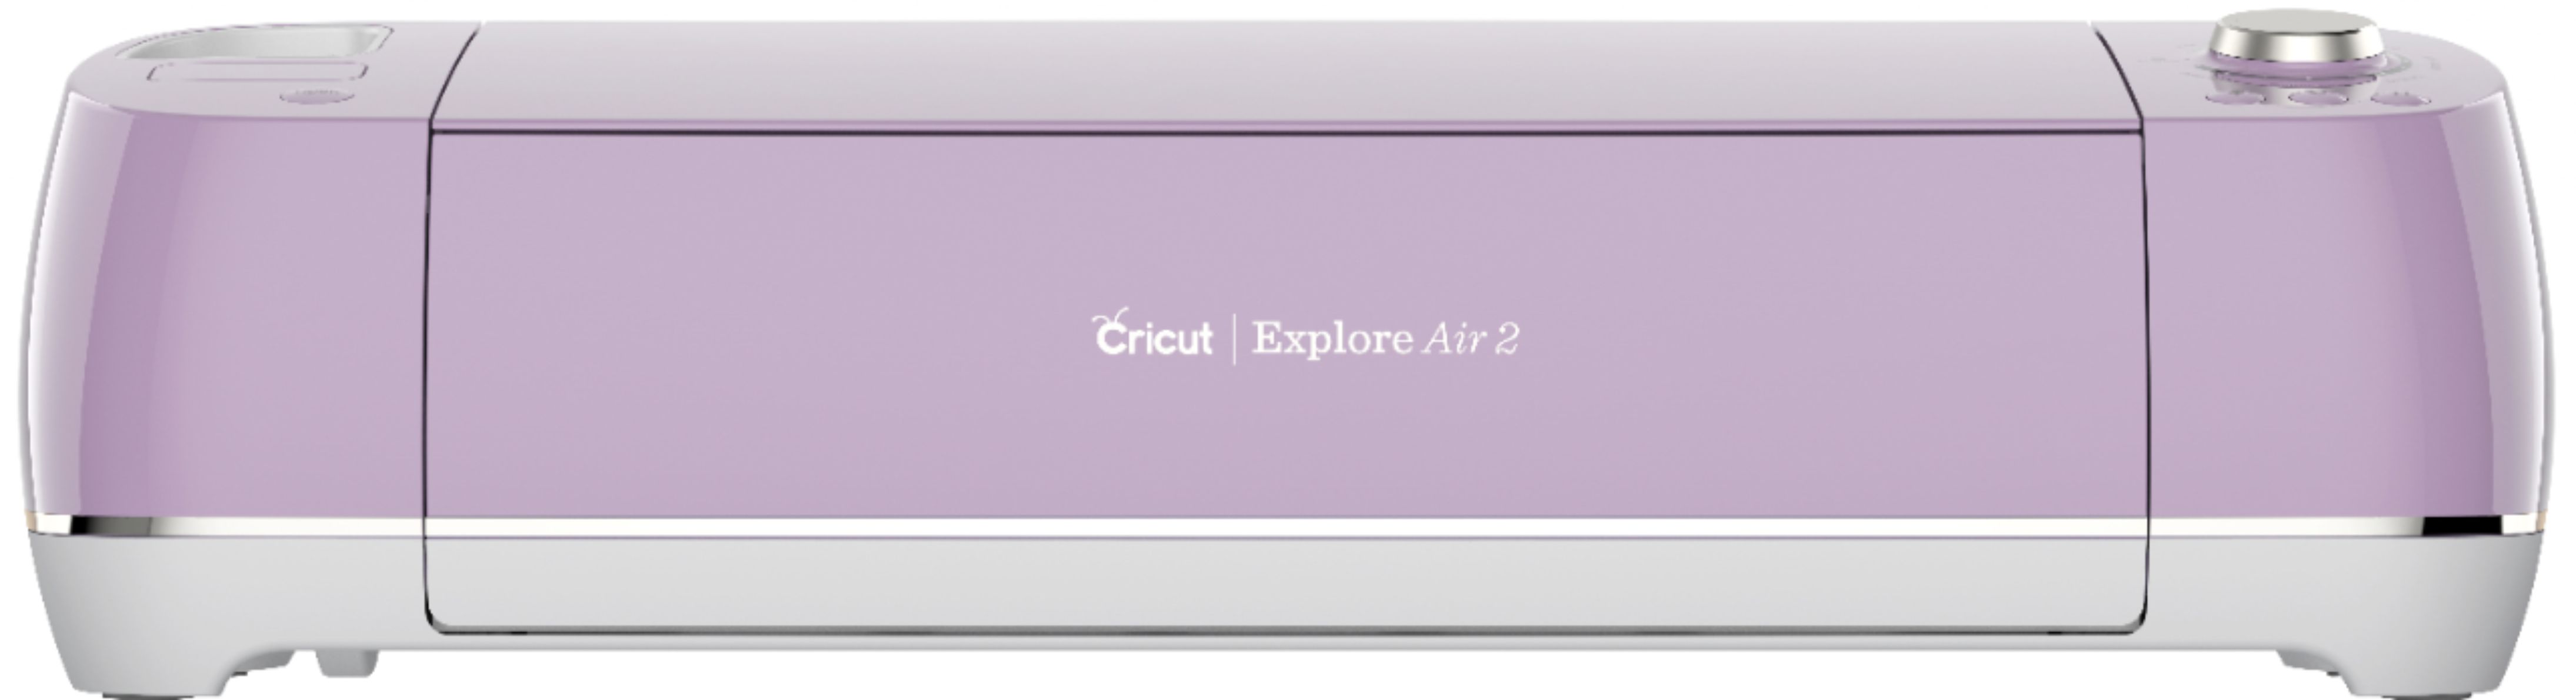 Cricut Explore Air 2 Cutting Machine Lilac 2006515 - Best Buy